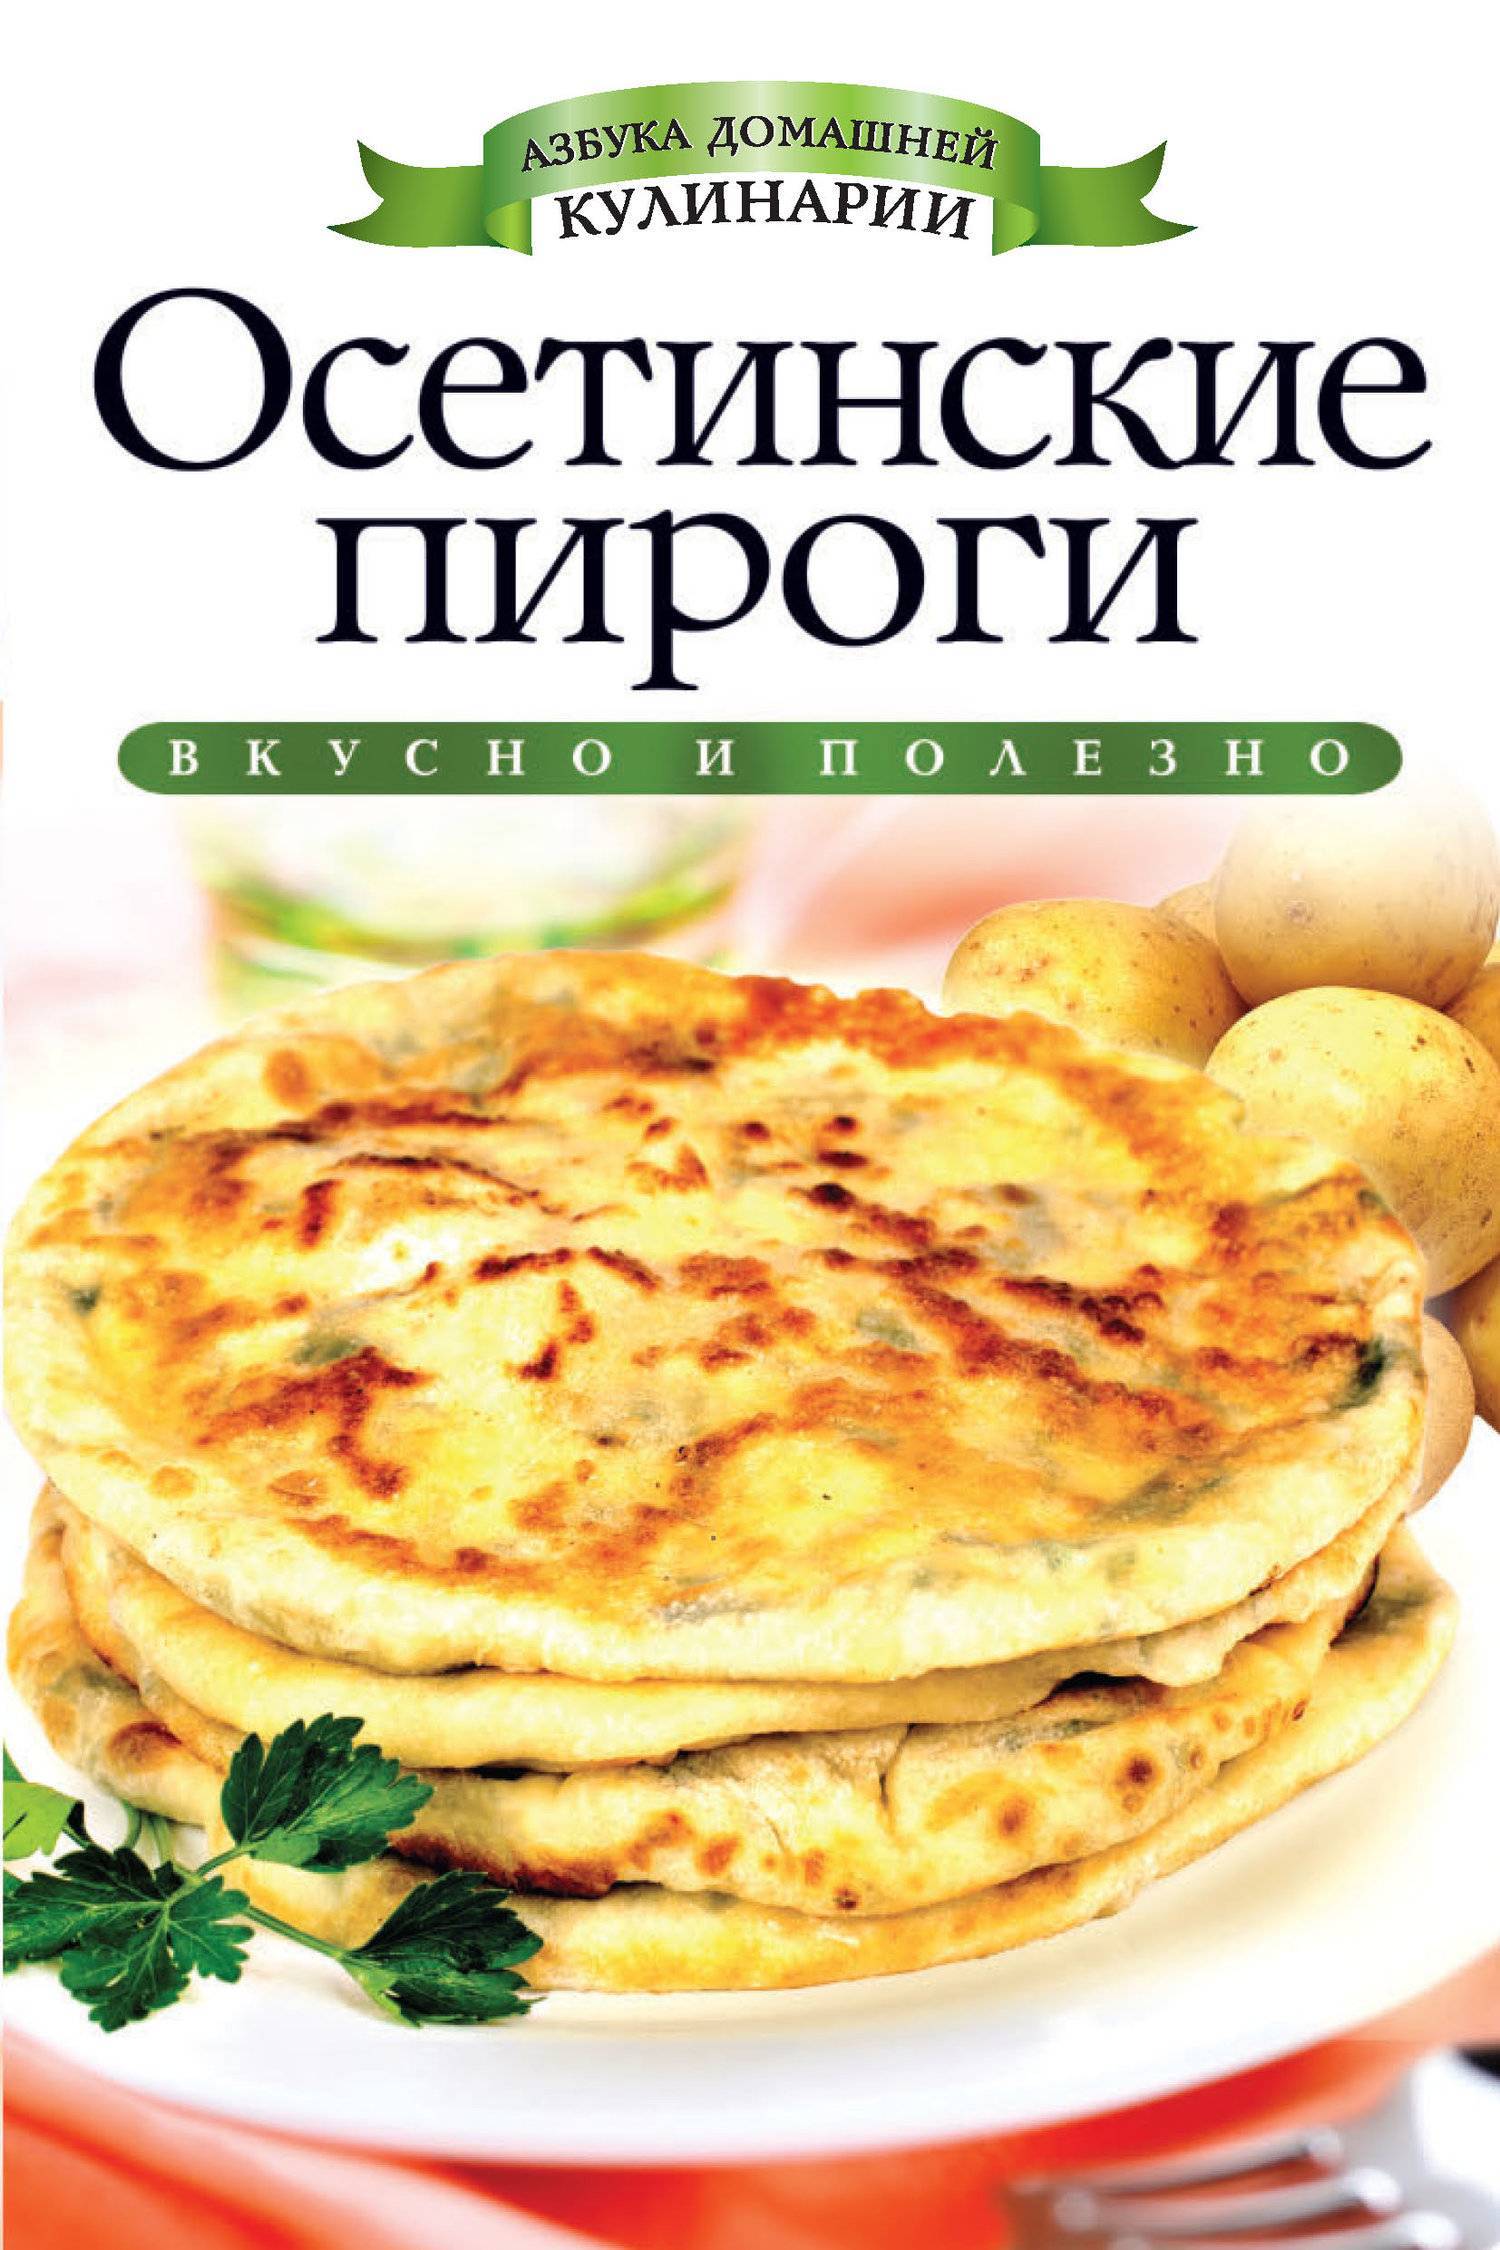 Визитки для осетинских пирогов